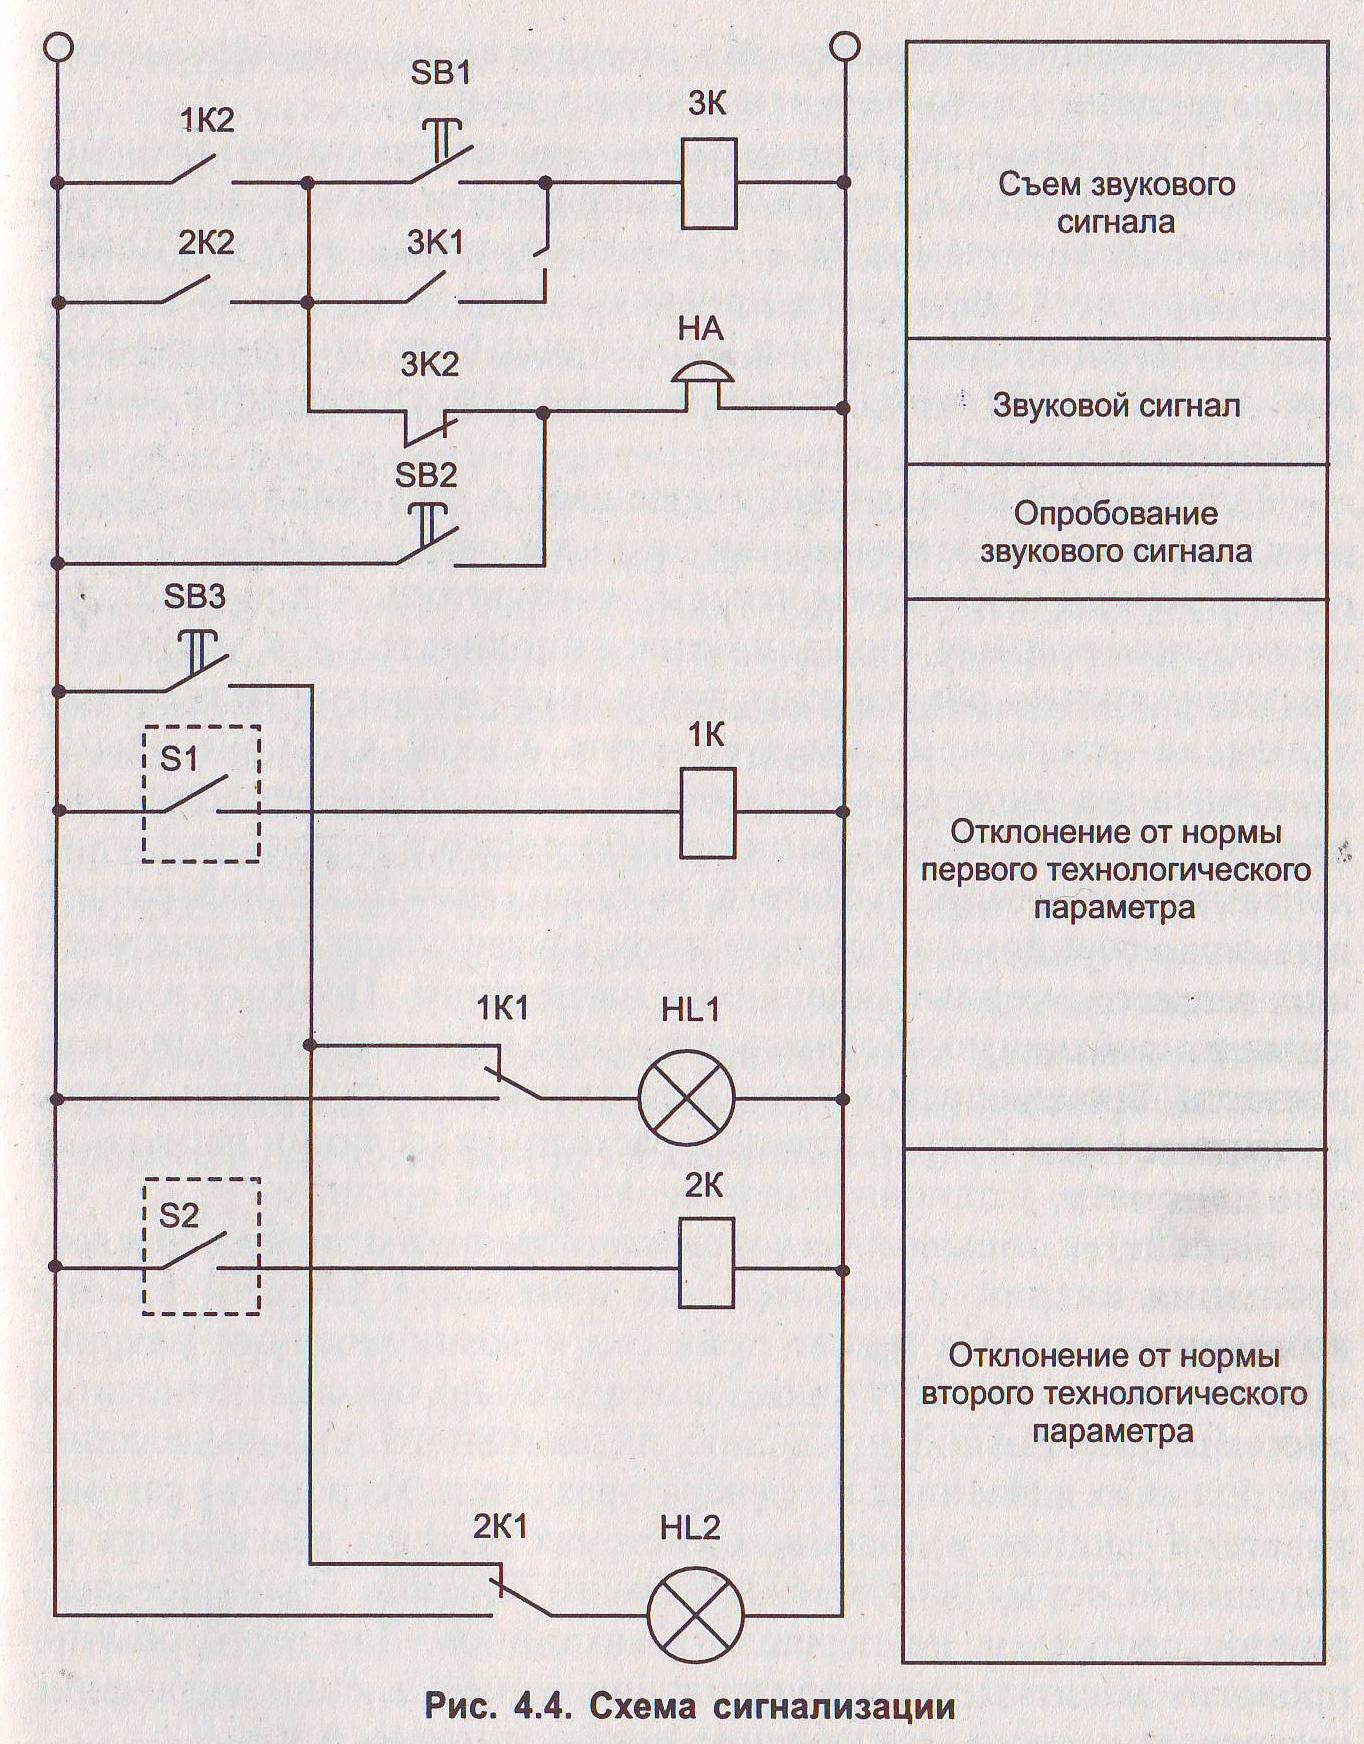 Схемы световой сигнализации. Принципиальная электрическая схема технологической сигнализации. Схема сигнализации на 2 параметра. Принципиальная схема сигнализации автомобиля. Схема квитирования звукового сигнала.